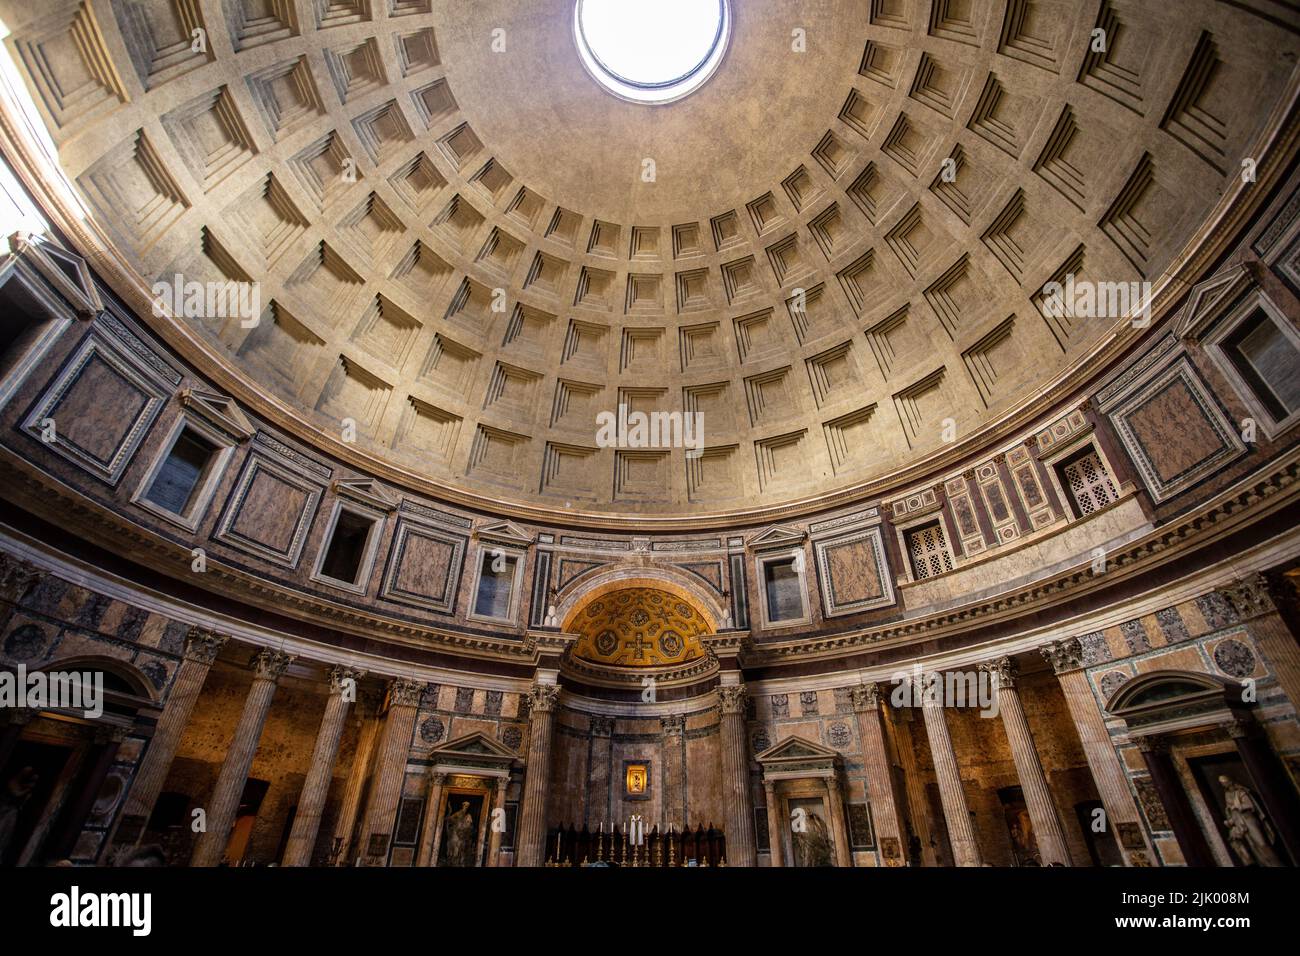 Roma, Italia - May21 2019: Cupola del Pantheon interno, all'interno di un tetto a cupola in piazza della rotonda, con lucernario rotondo. Popolare italia turismo vista. Foto Stock